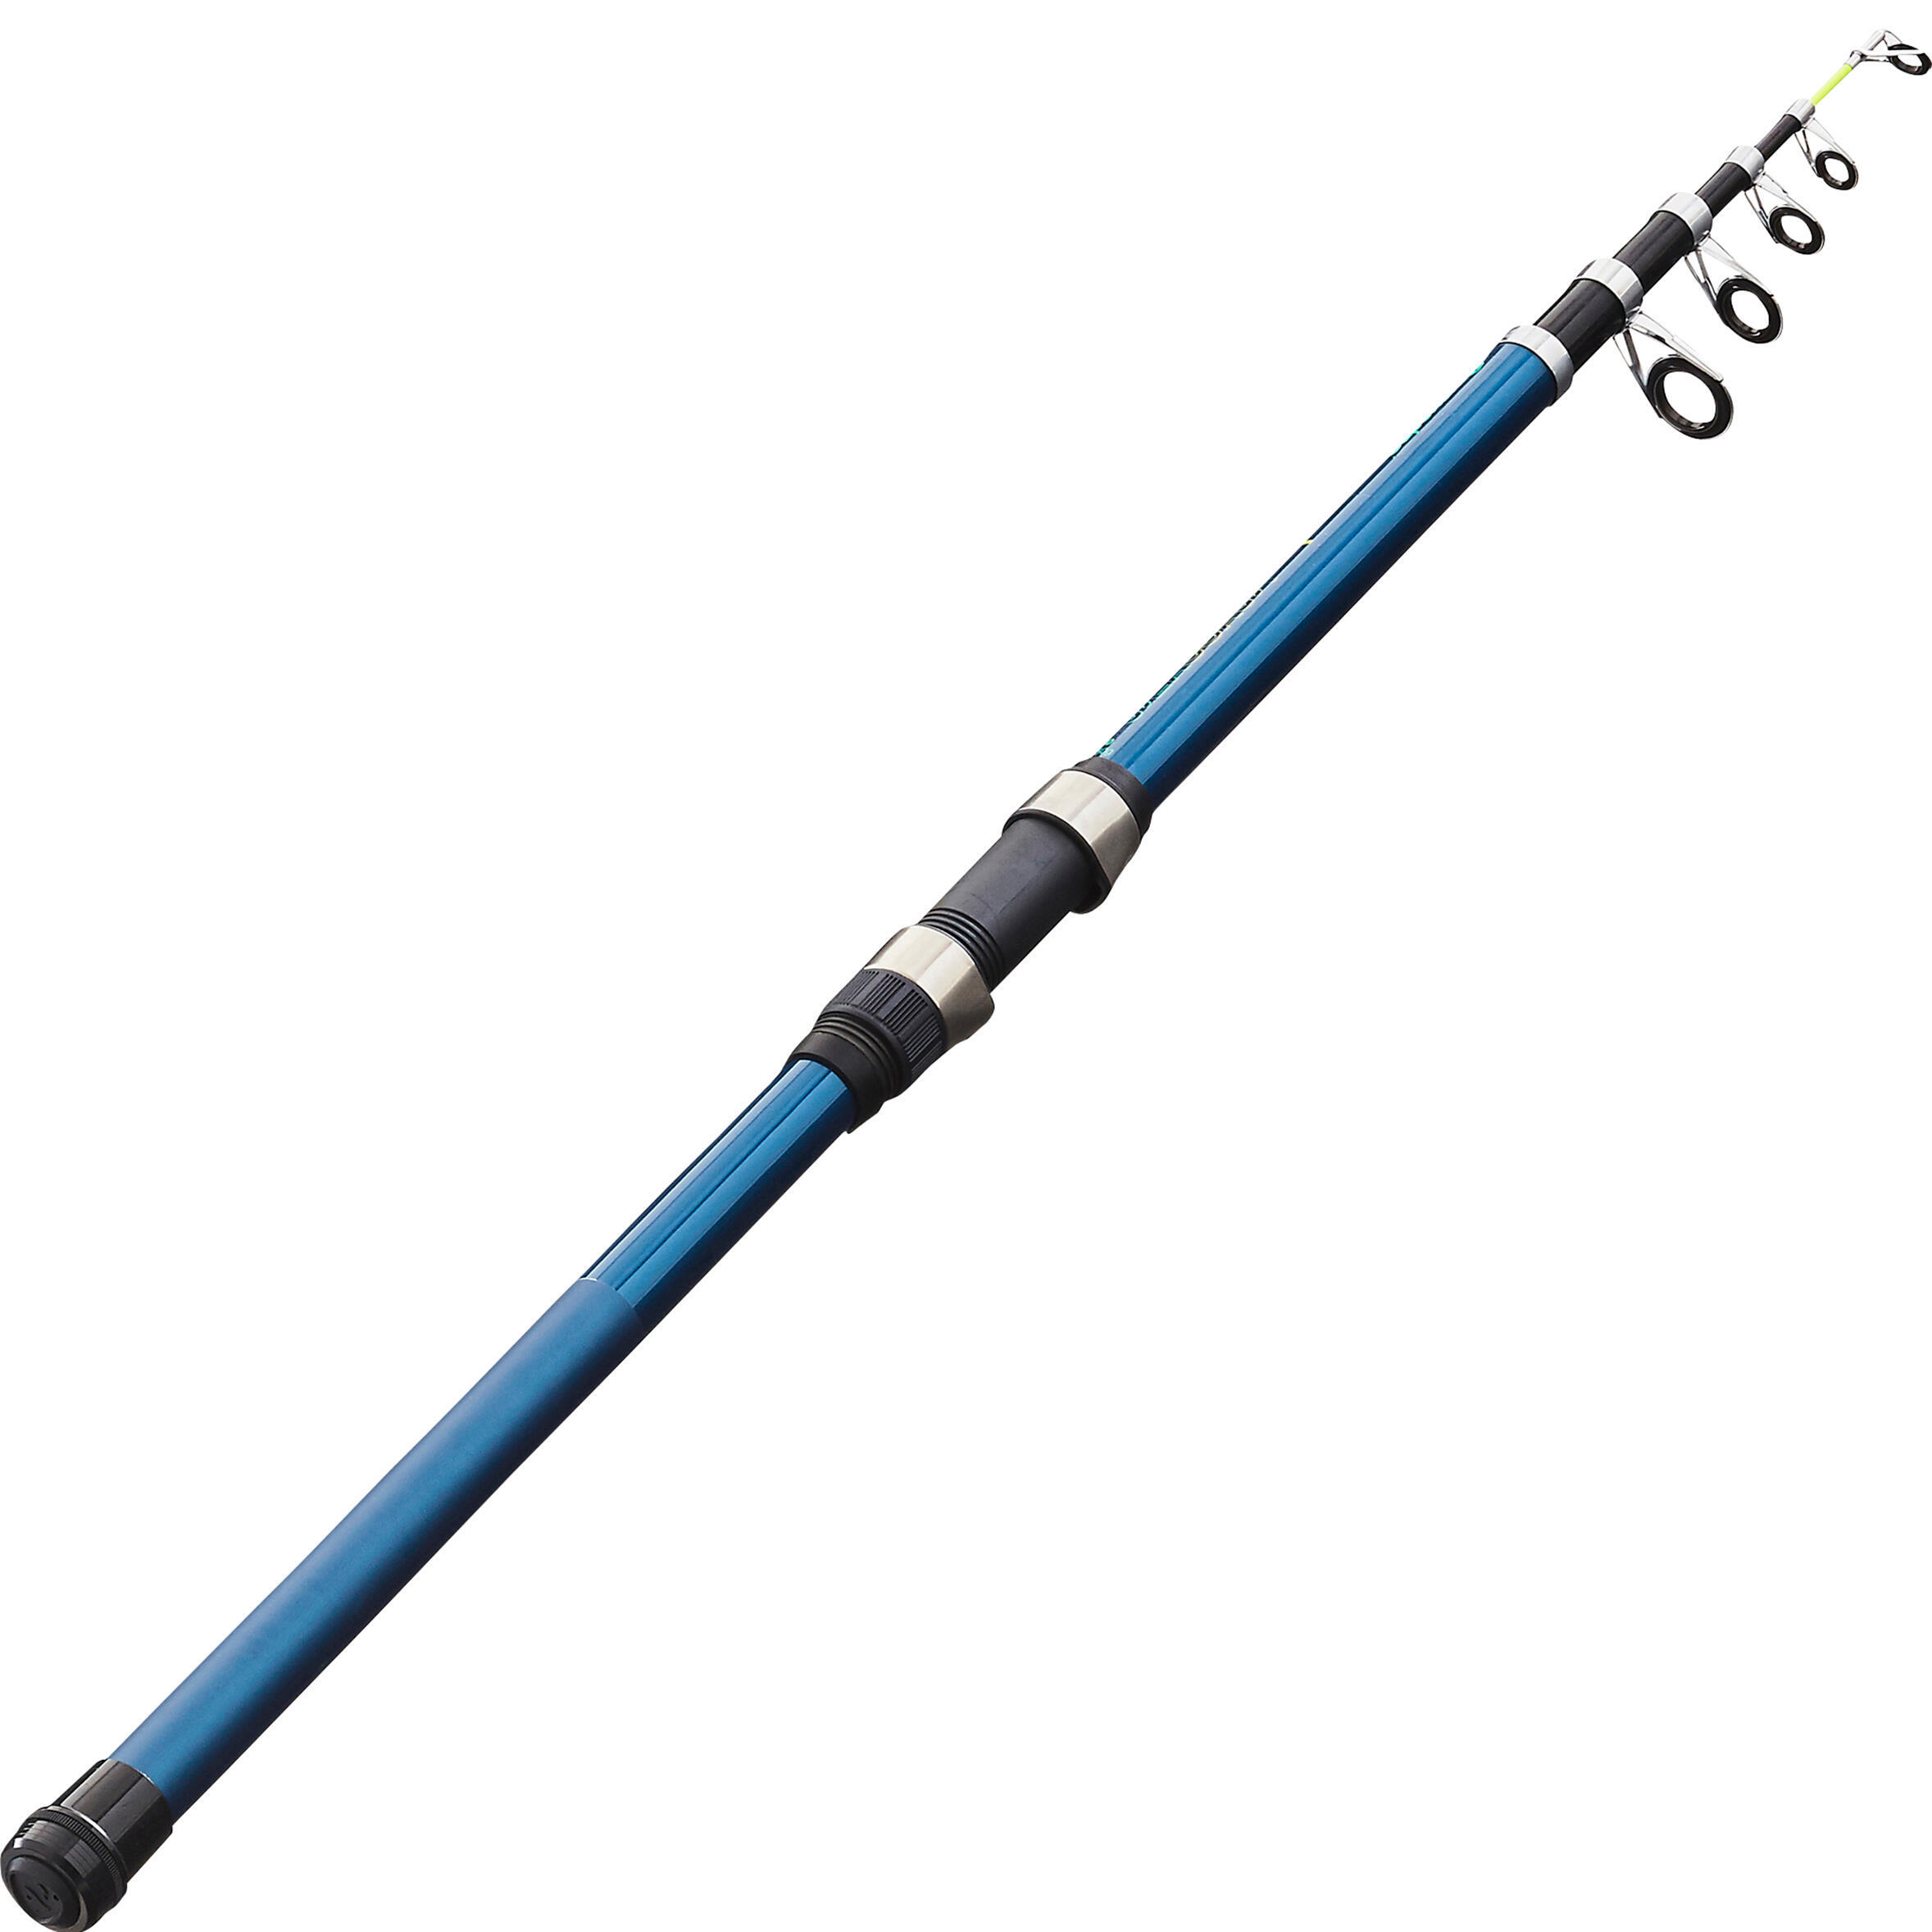 Удочка телескопическая поплавочная рыболовная Морской берег-1 350 CAPERLAN, синий